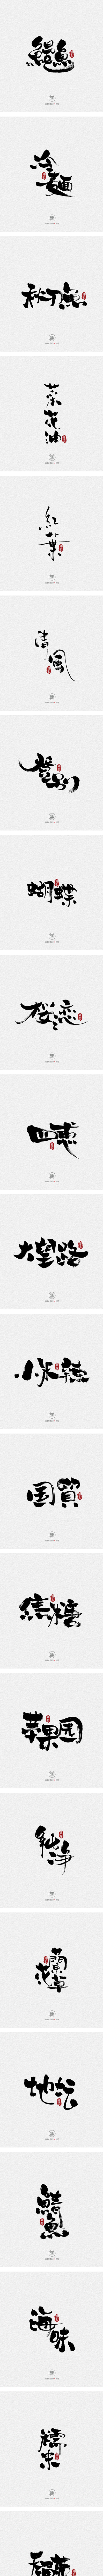 10.31一组手写字-字体传奇网-中国首...